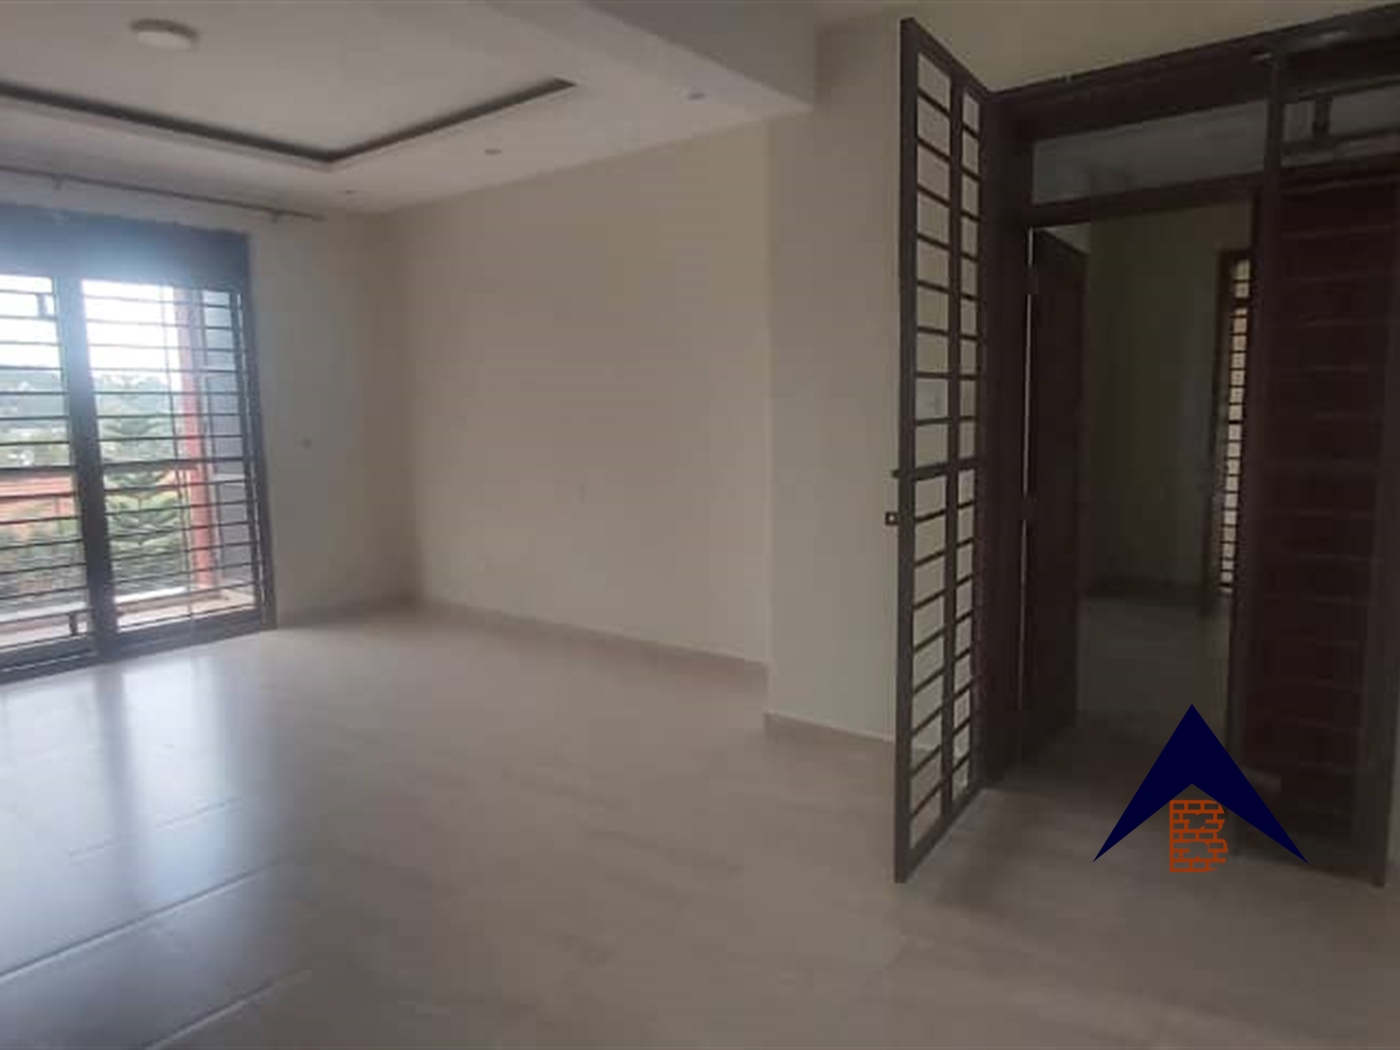 Apartment block for rent in Naguru Kampala